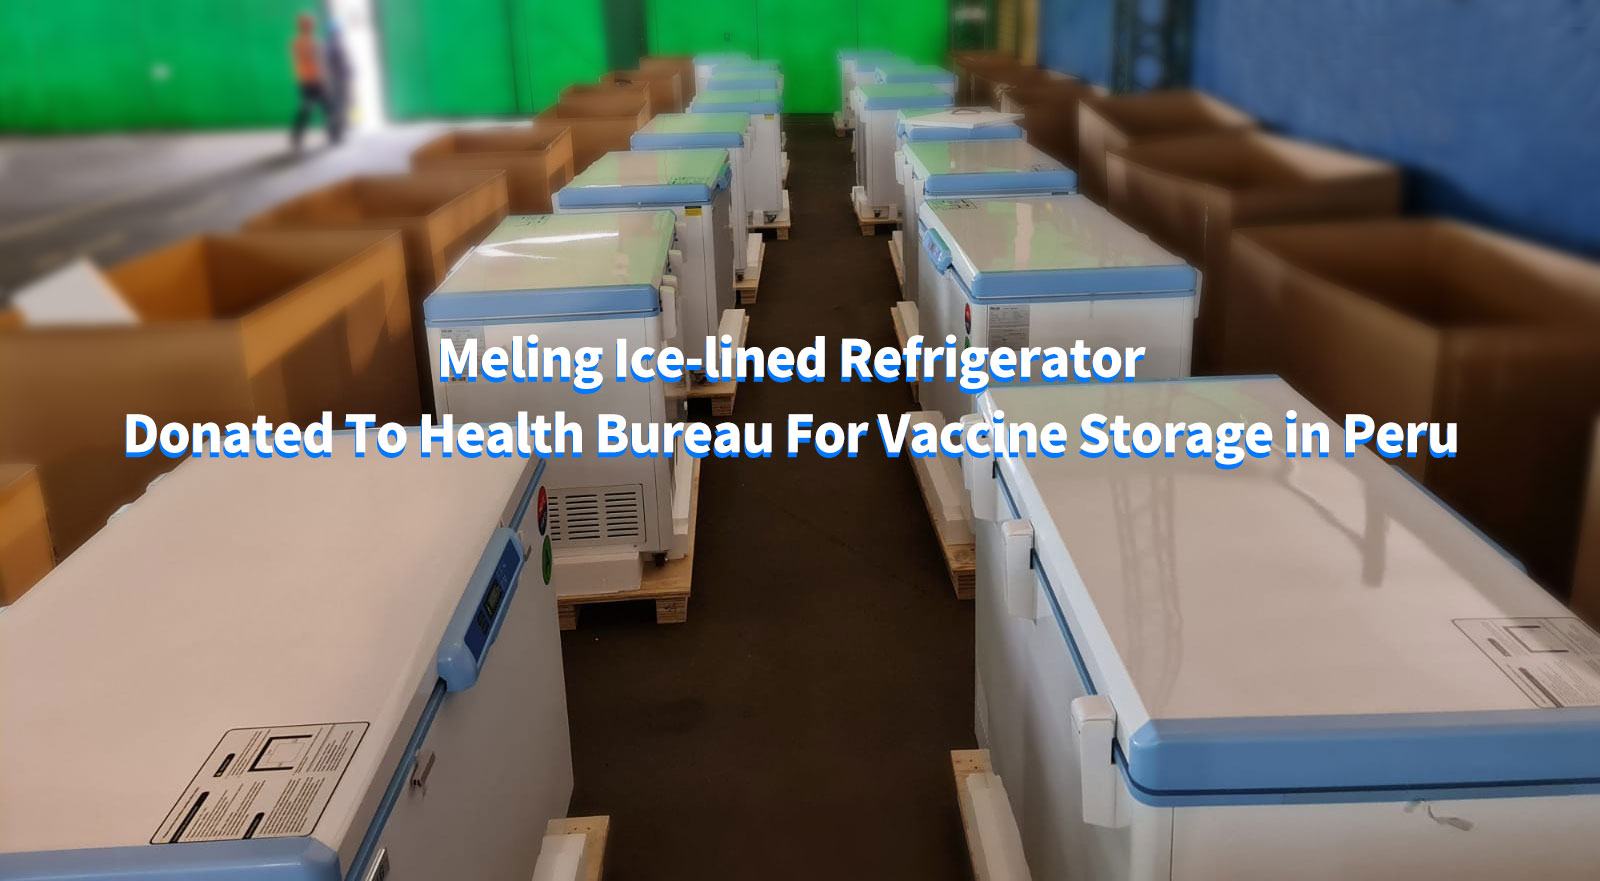 ثلاجة ميلينج المبطنة بالثلج تم التبرع بها لمكتب الصحة لتخزين اللقاح في بيرو
